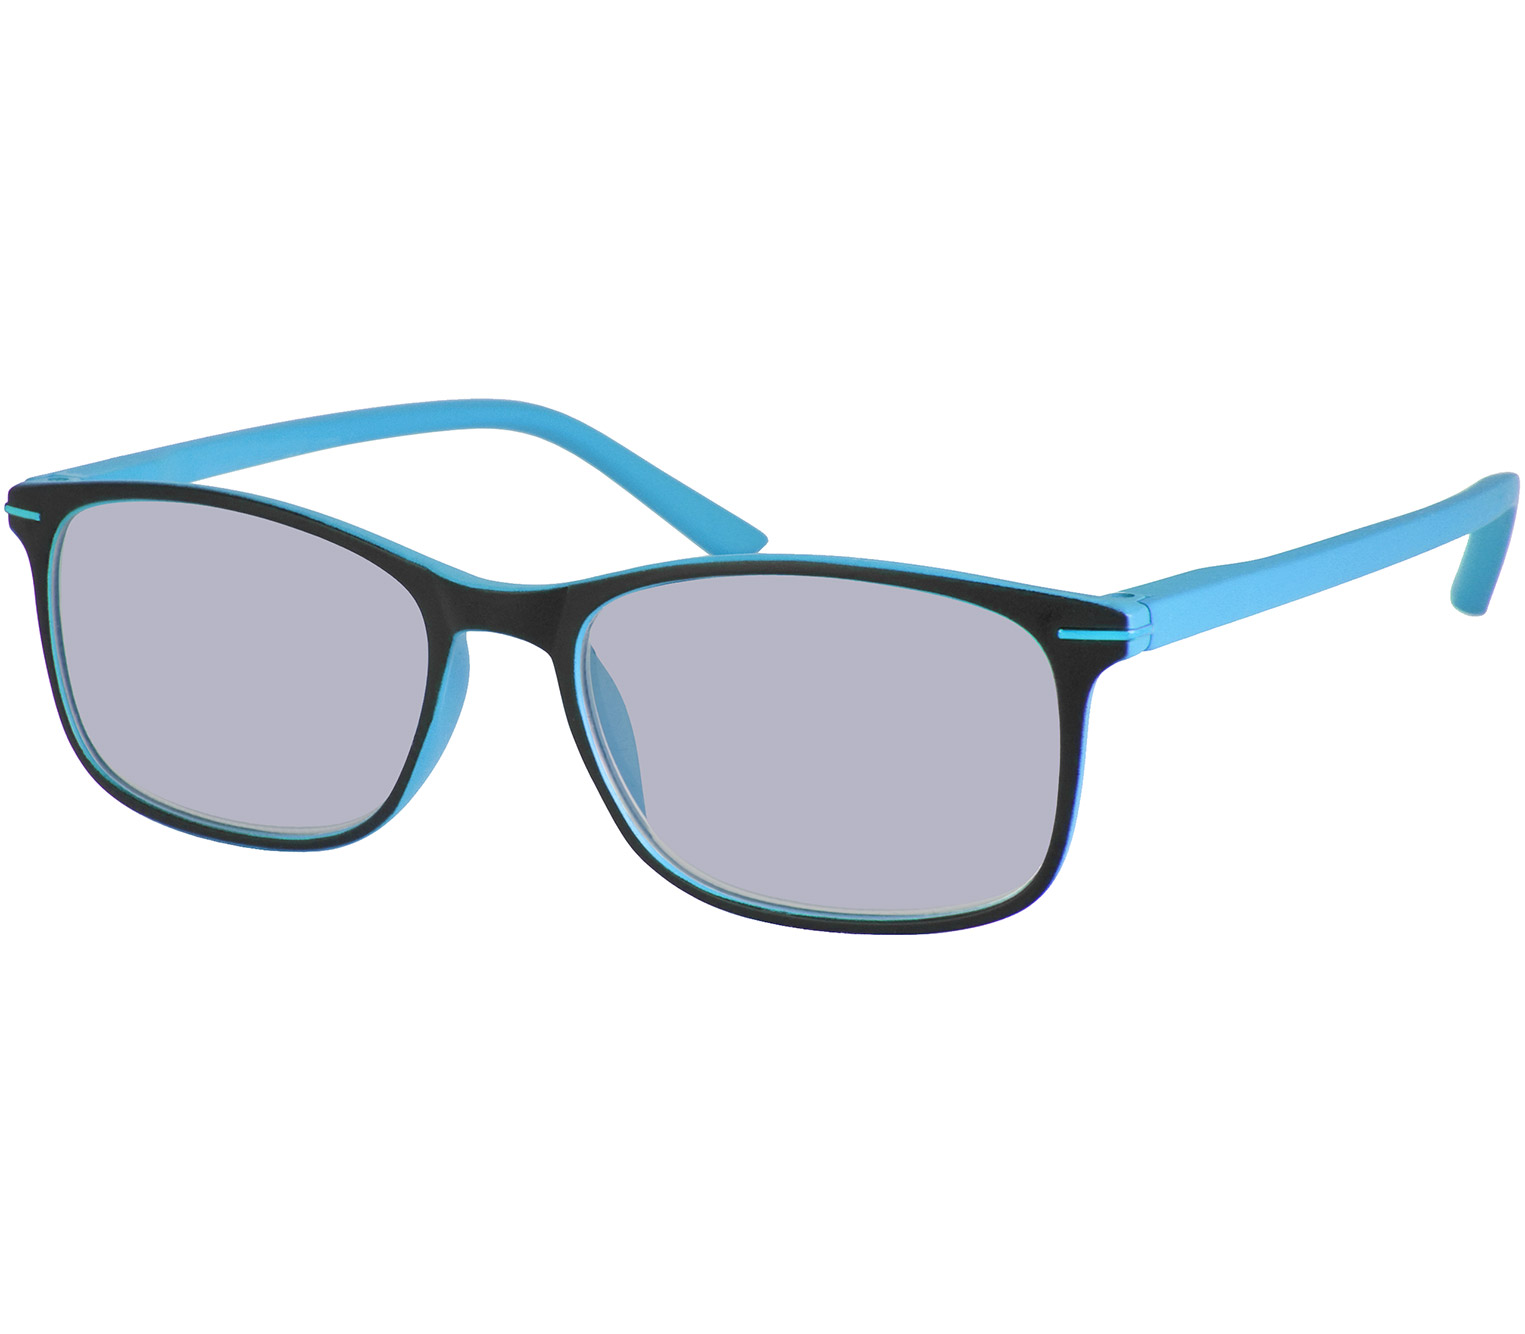 Main Image (Angle) - Esprit (Blue) Classic Sunglasses